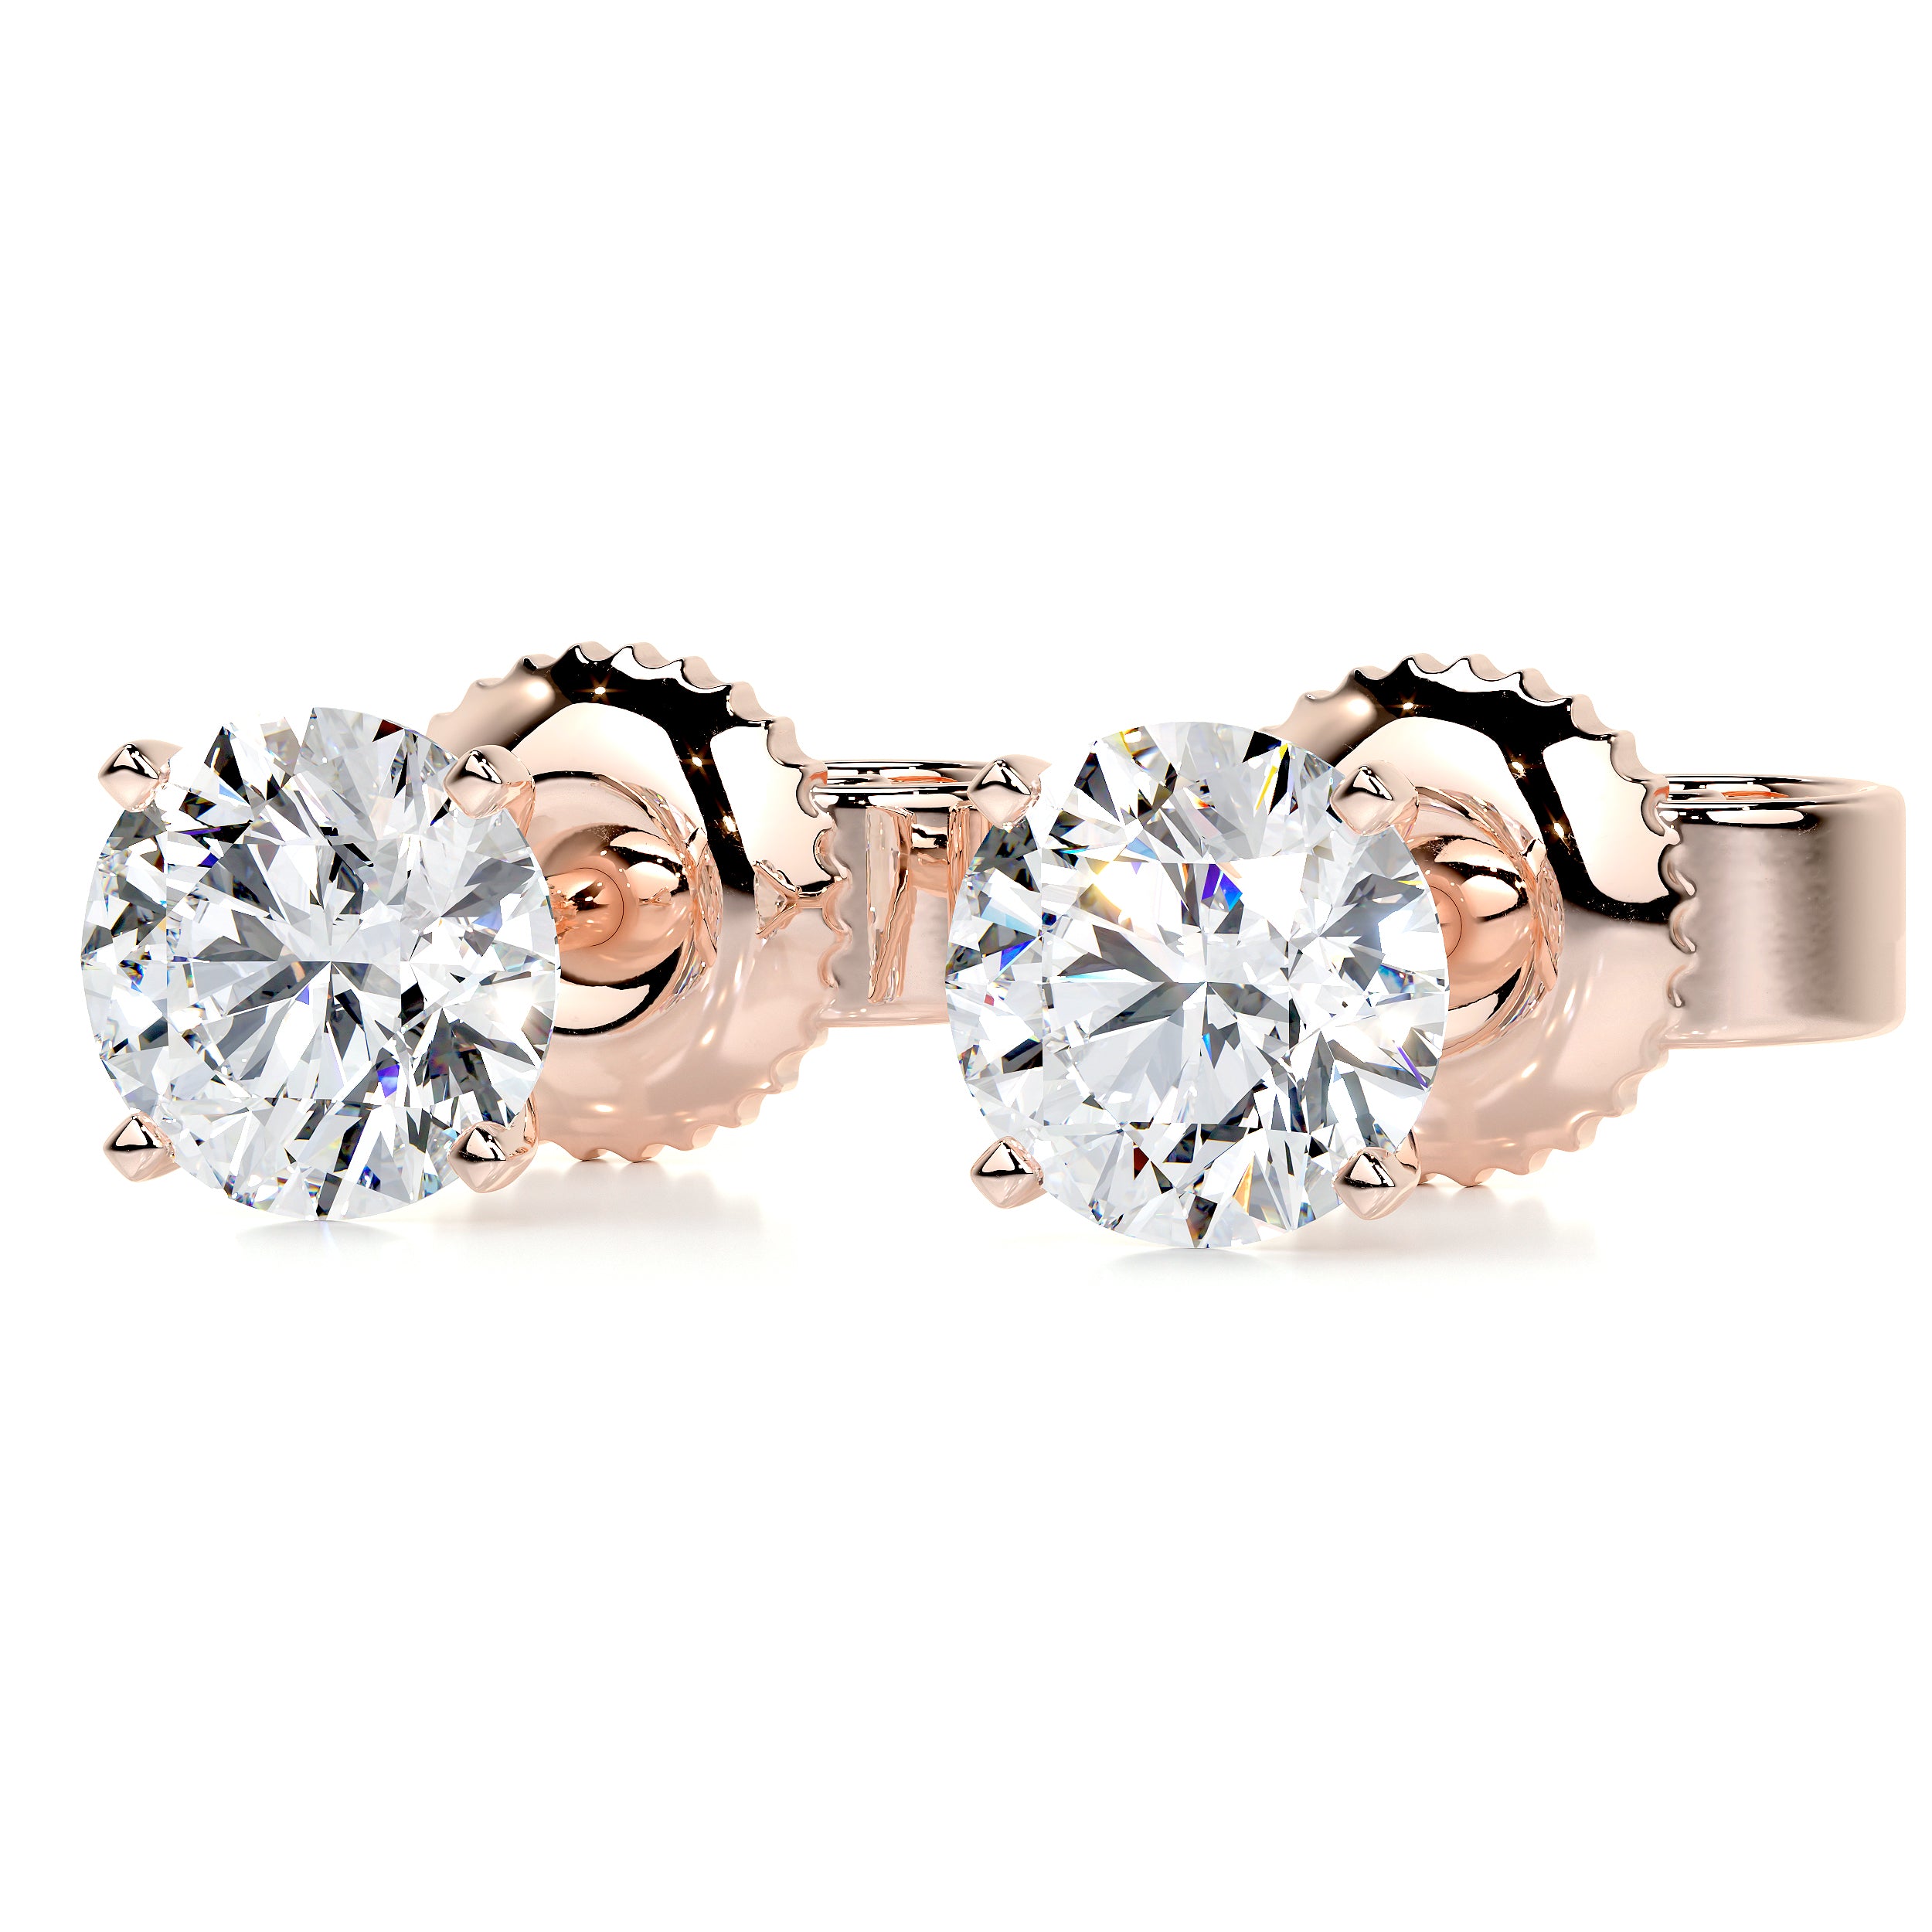 Allen Lab Grown Diamond Earrings   (3 Carat) -14K Rose Gold